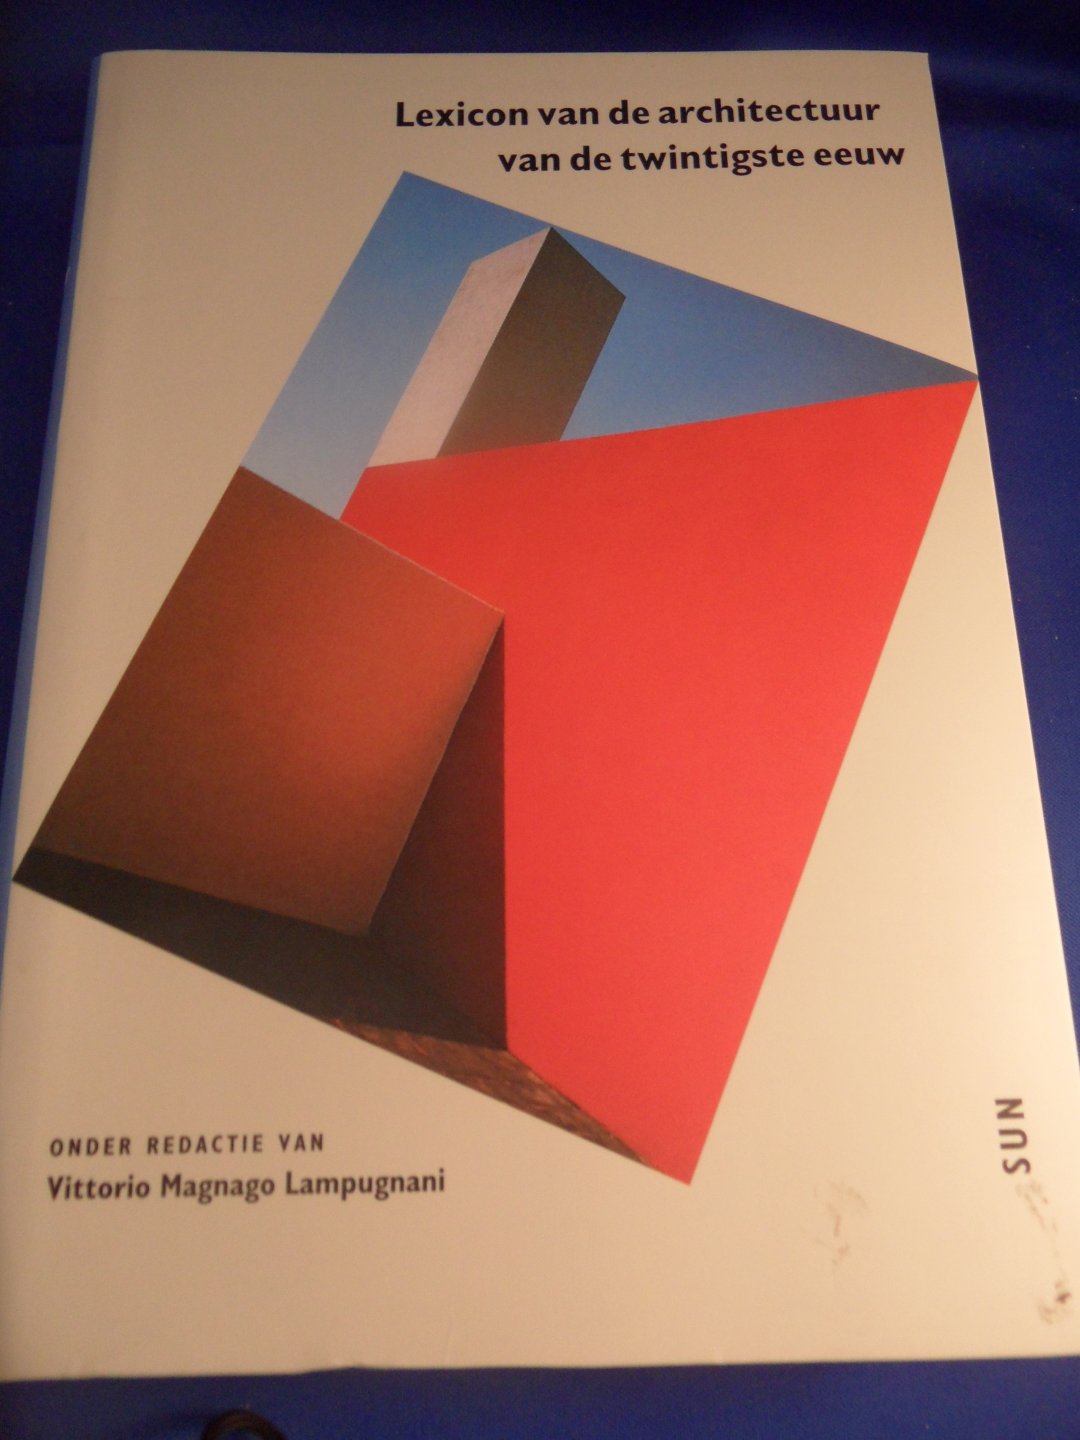 Lampugnani, Vittorio Magnago - Lexicon van de architectuur van de twintigste eeuw